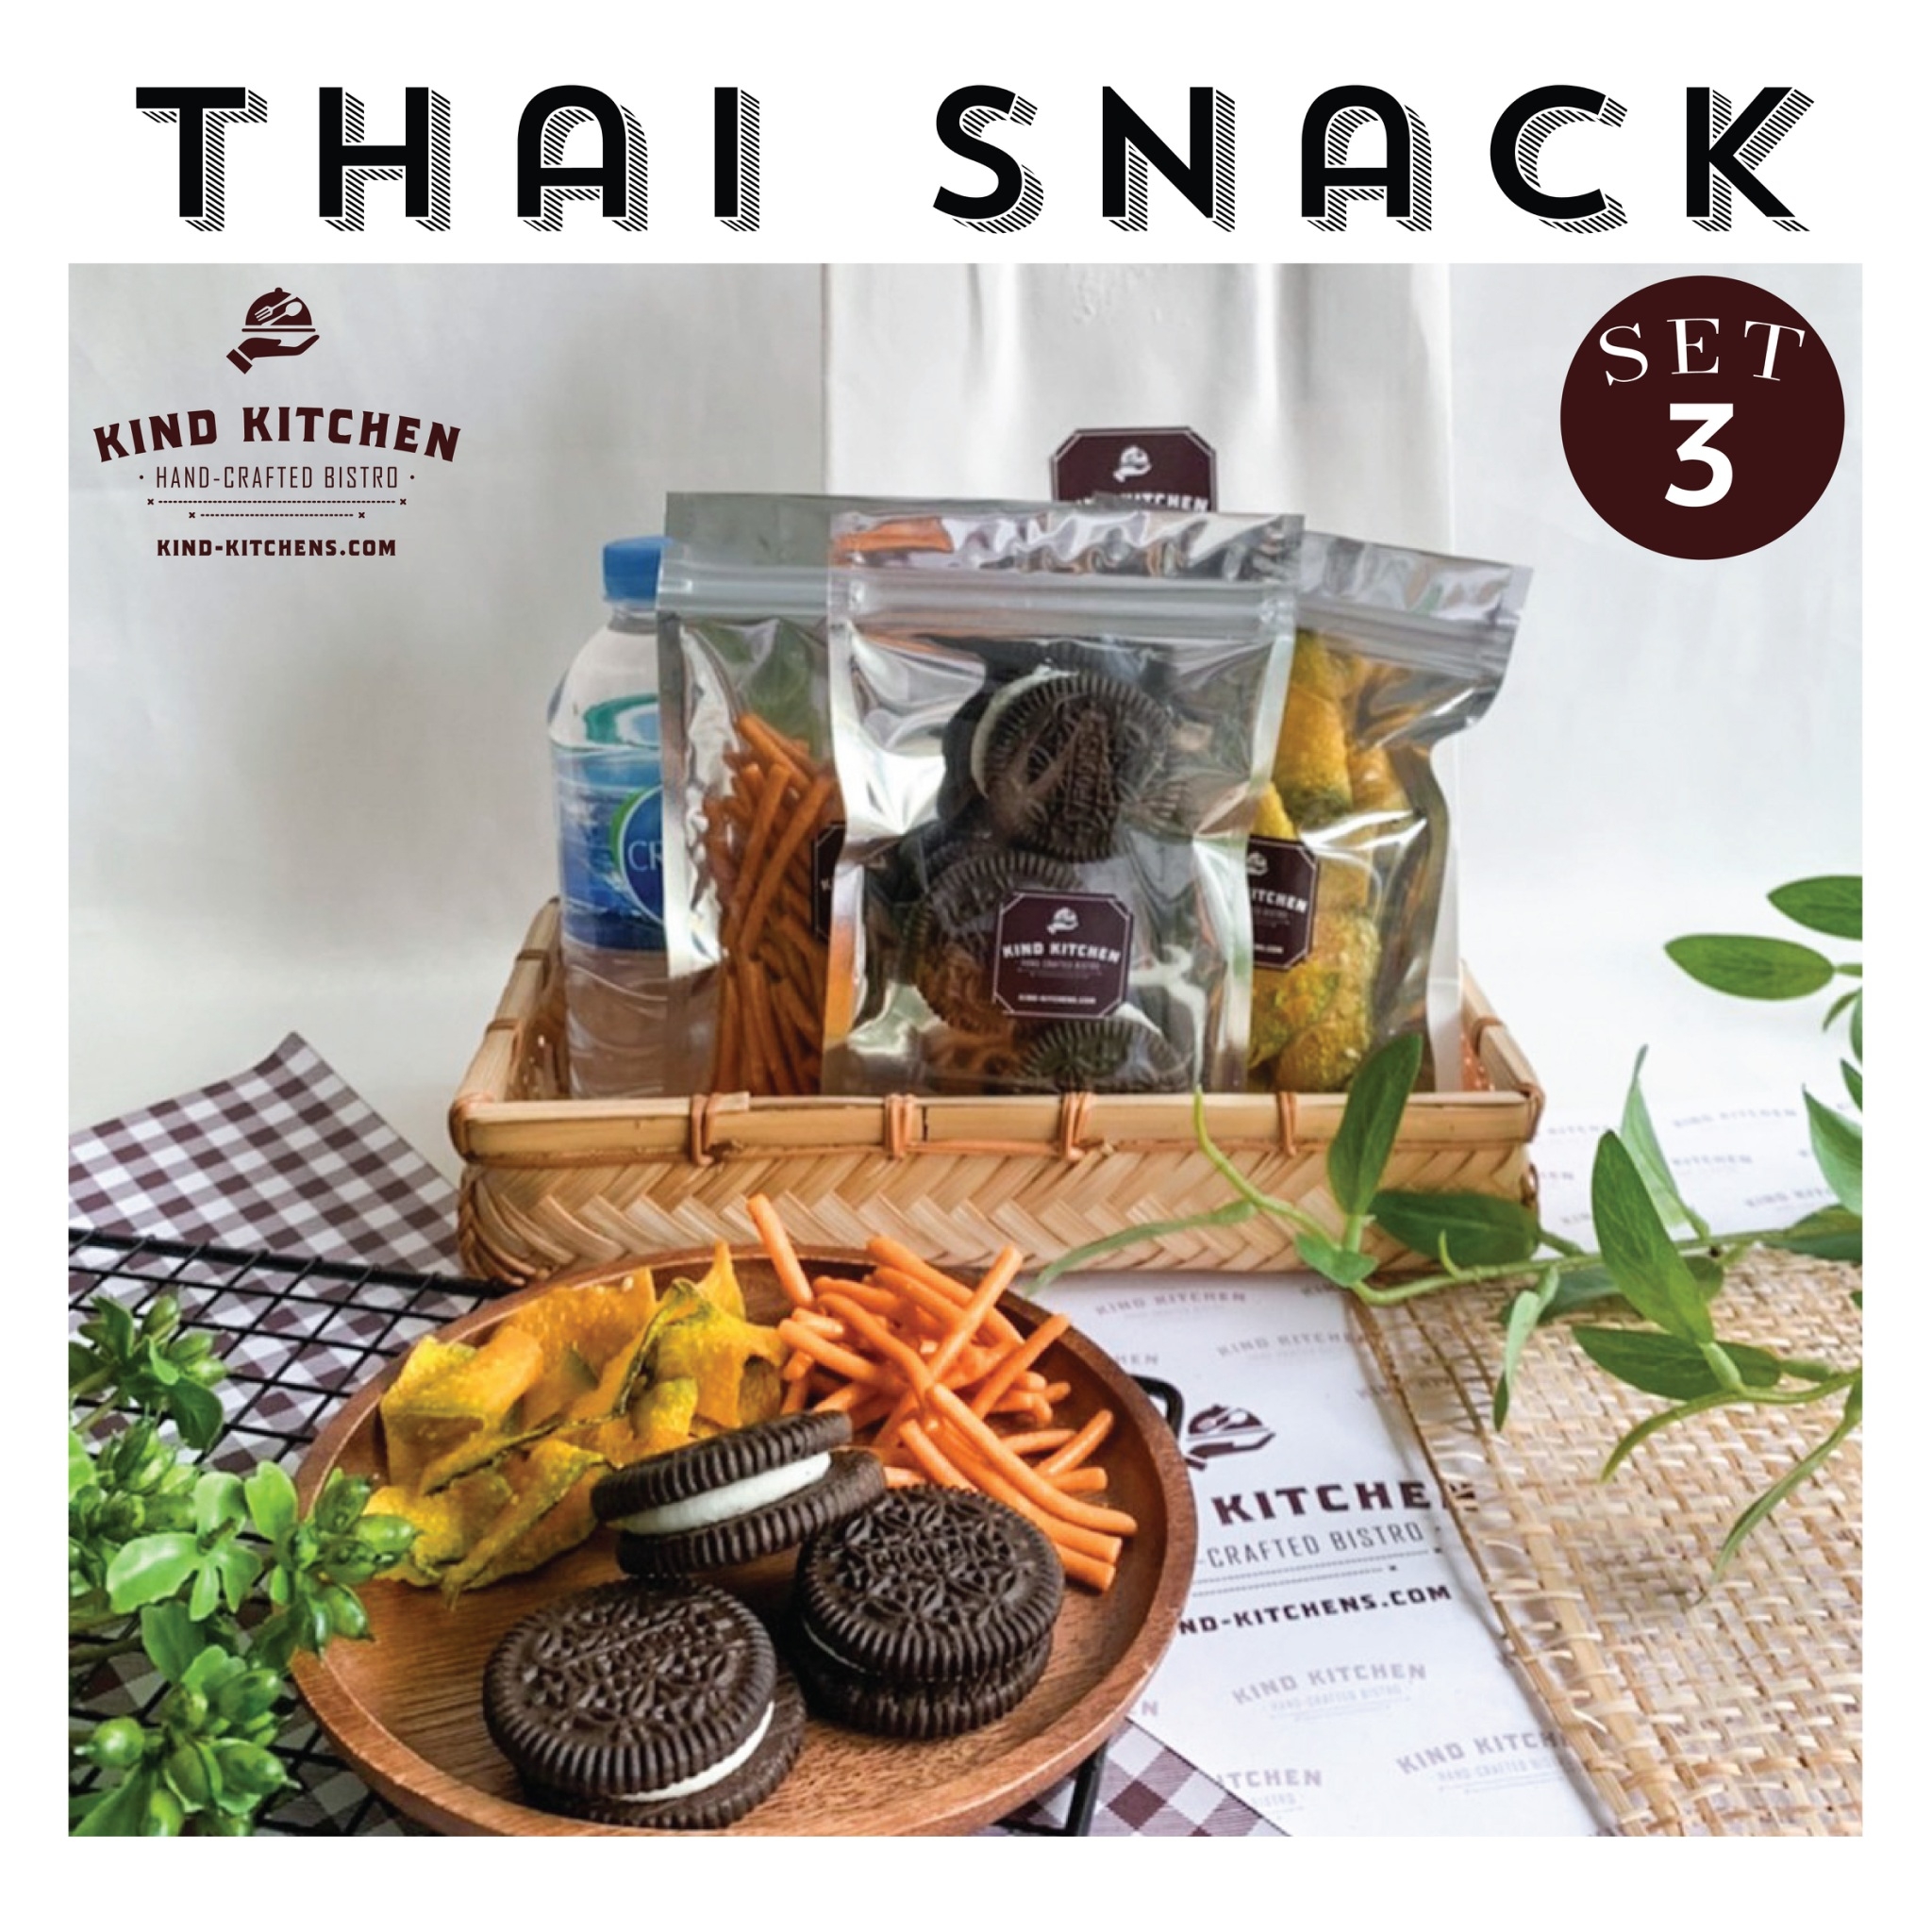 ขนมอบกรอบ Thai Snack  3ชนิด พร้อมน้ำและถุง Set 3 (เลือกขนมได้ 3 ชนิด)